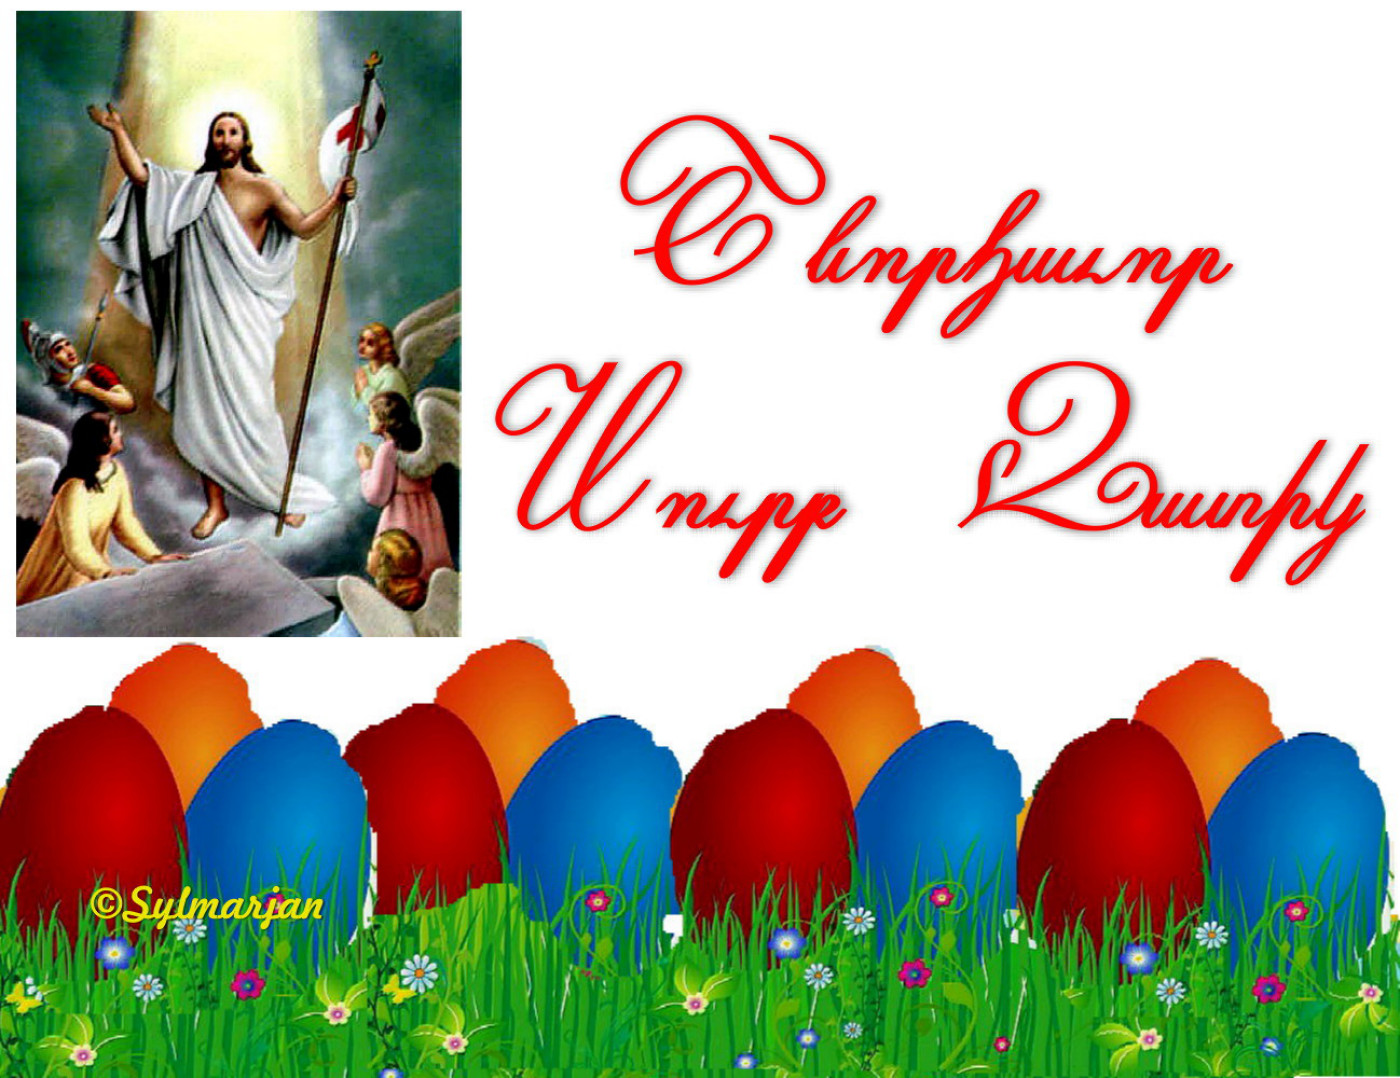 Христос аряв и мерелоц. Поздравление с армянской Пасхой. Пасхальные открытки. Поздравляю с Пасхой. Армянские пасхальные поздравления.